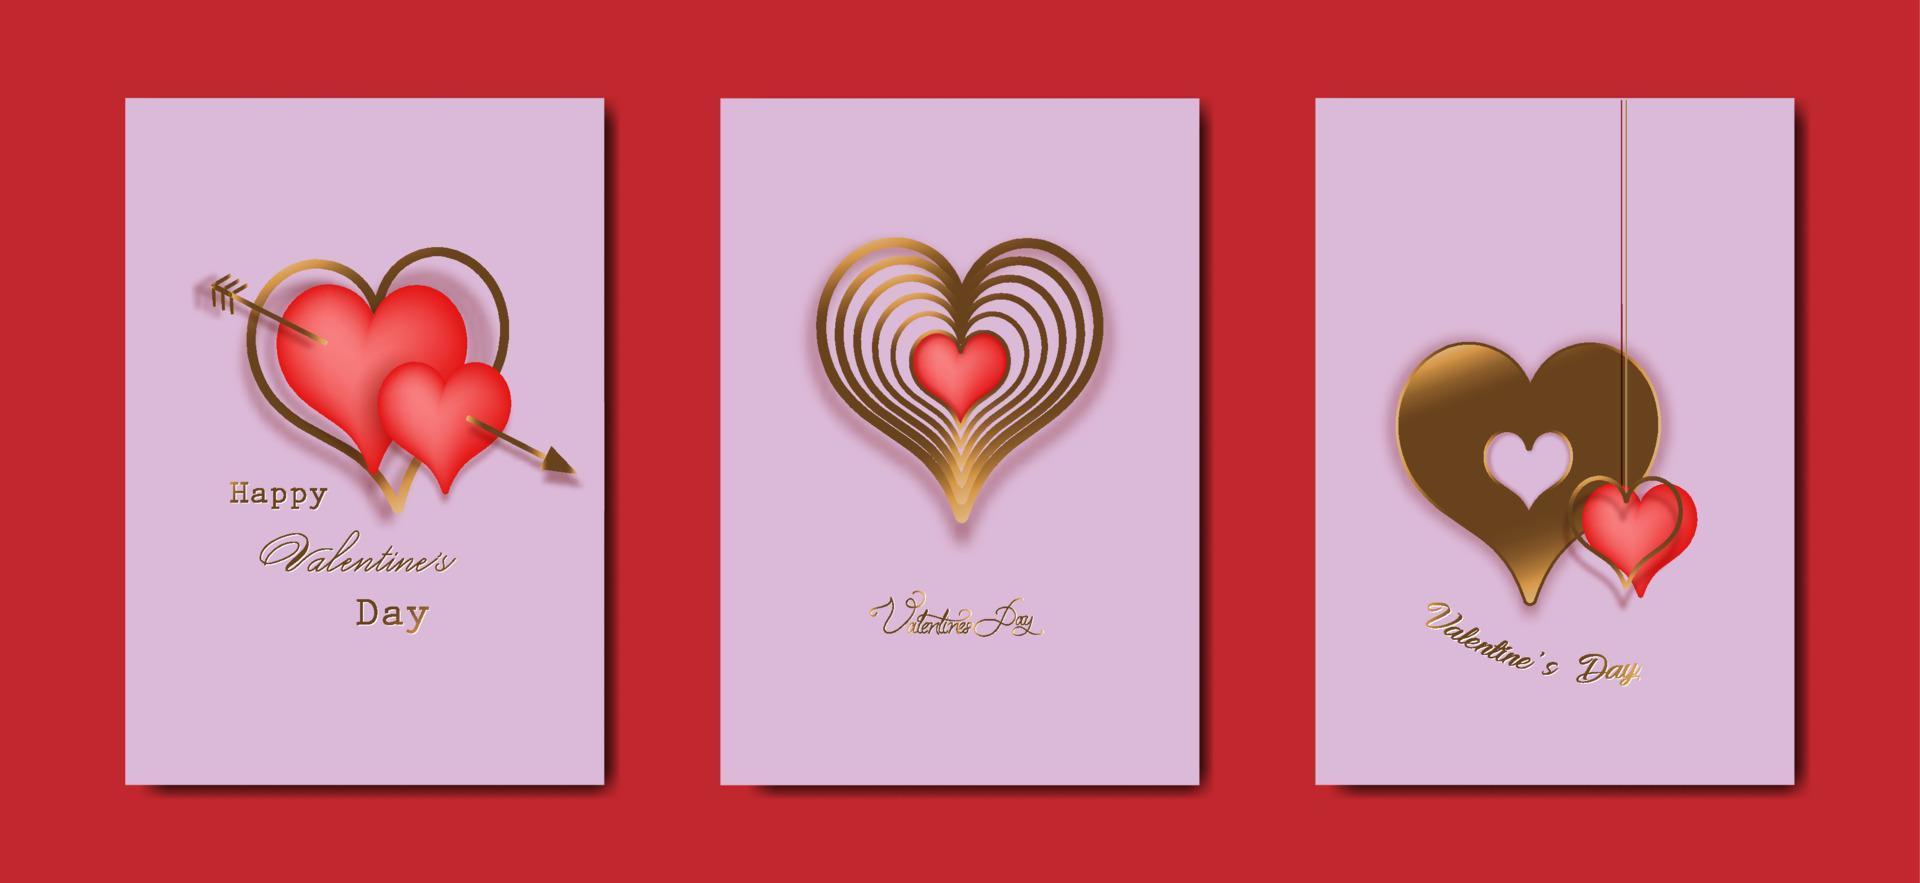 glücklicher valentinstag-vektor-set-grußkarte. Gold und rote Herzen auf rosa Hintergrund. goldenes feiertagsplakat mit text, juwelen. konzept für valentinstagbanner, flyer, partyeinladung, geschenkladenkarten vektor